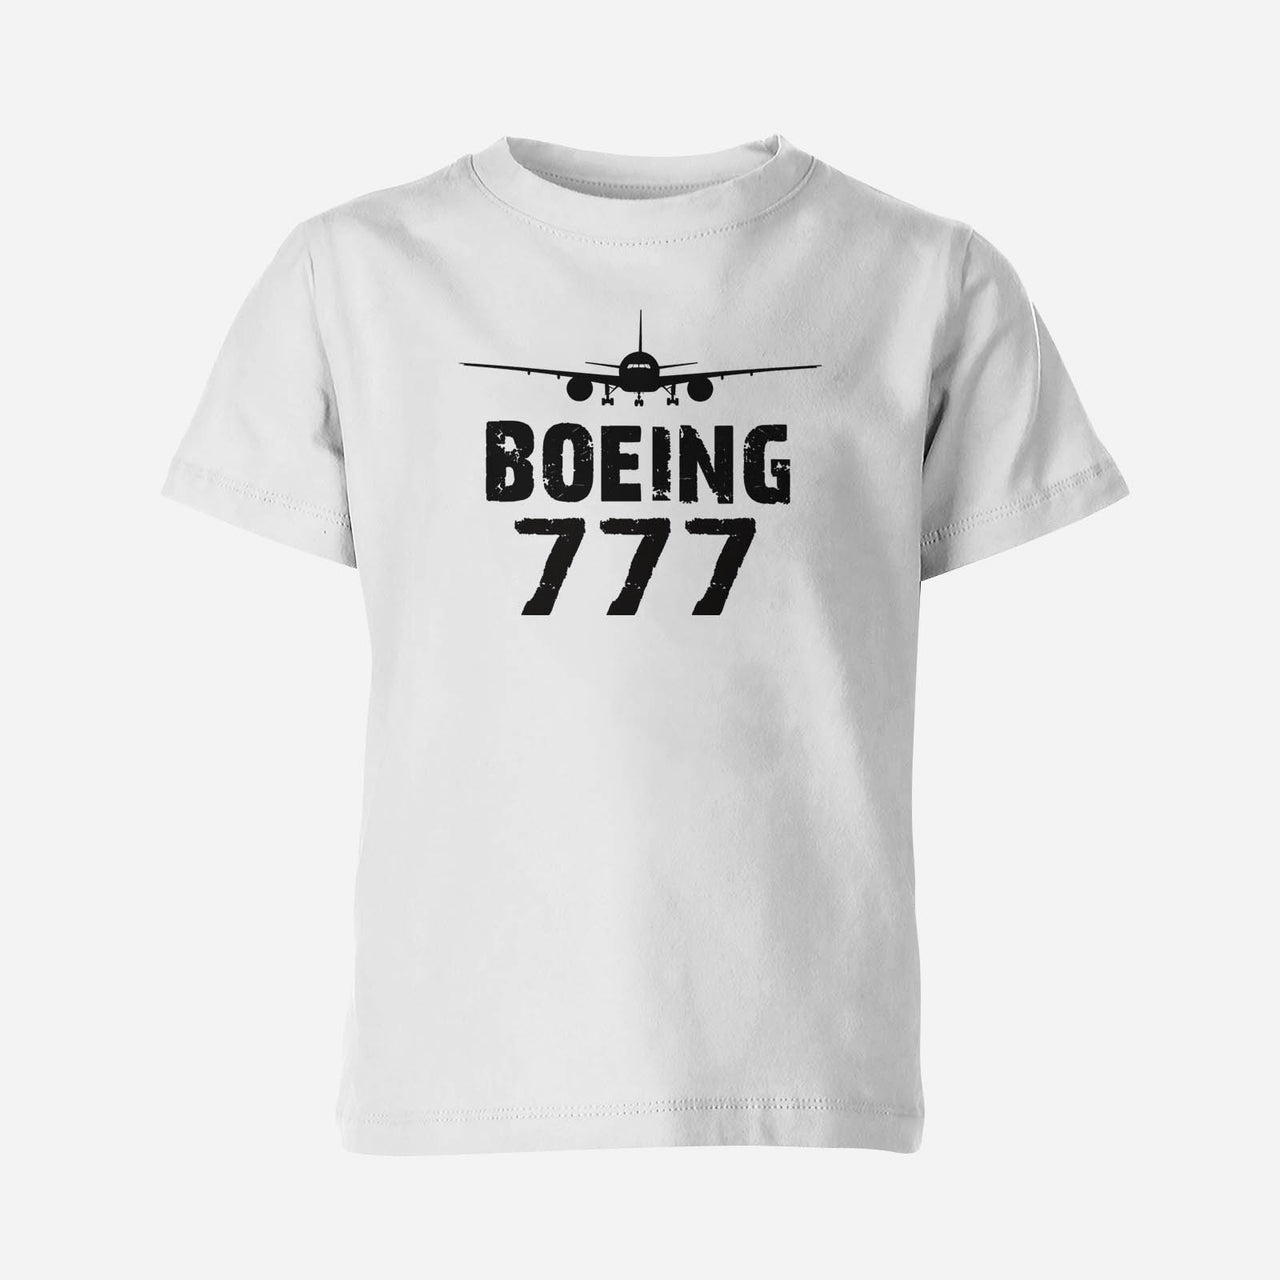 Boeing 777 & Plane Designed Children T-Shirts